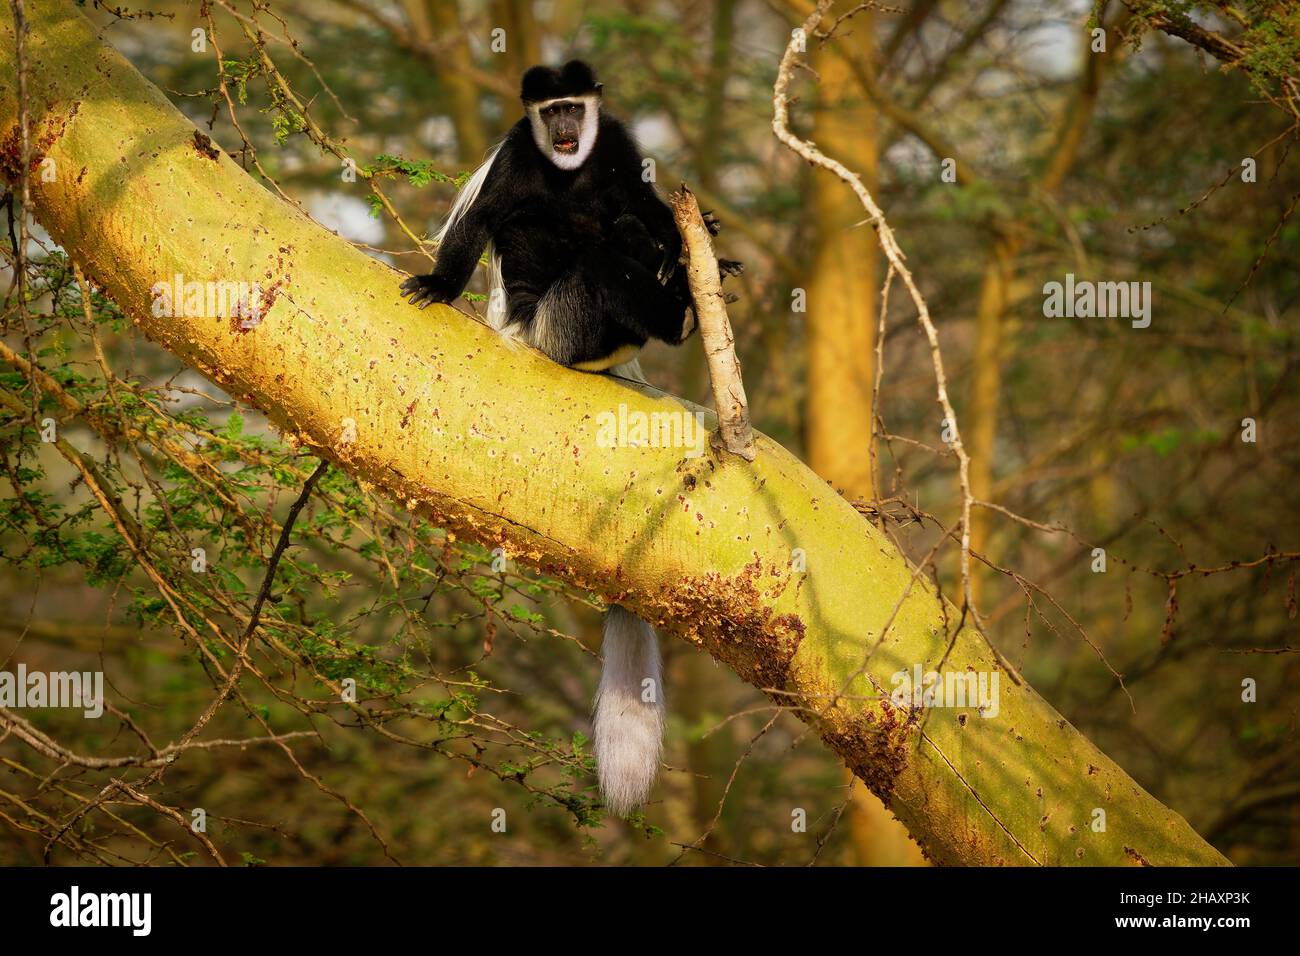 Colobus o colobus blanco y negro - Colobus guereza, mono nativo de África, relacionado con el mono colobus rojo de Piliocolobus, cola larga, mujer con yo Foto de stock